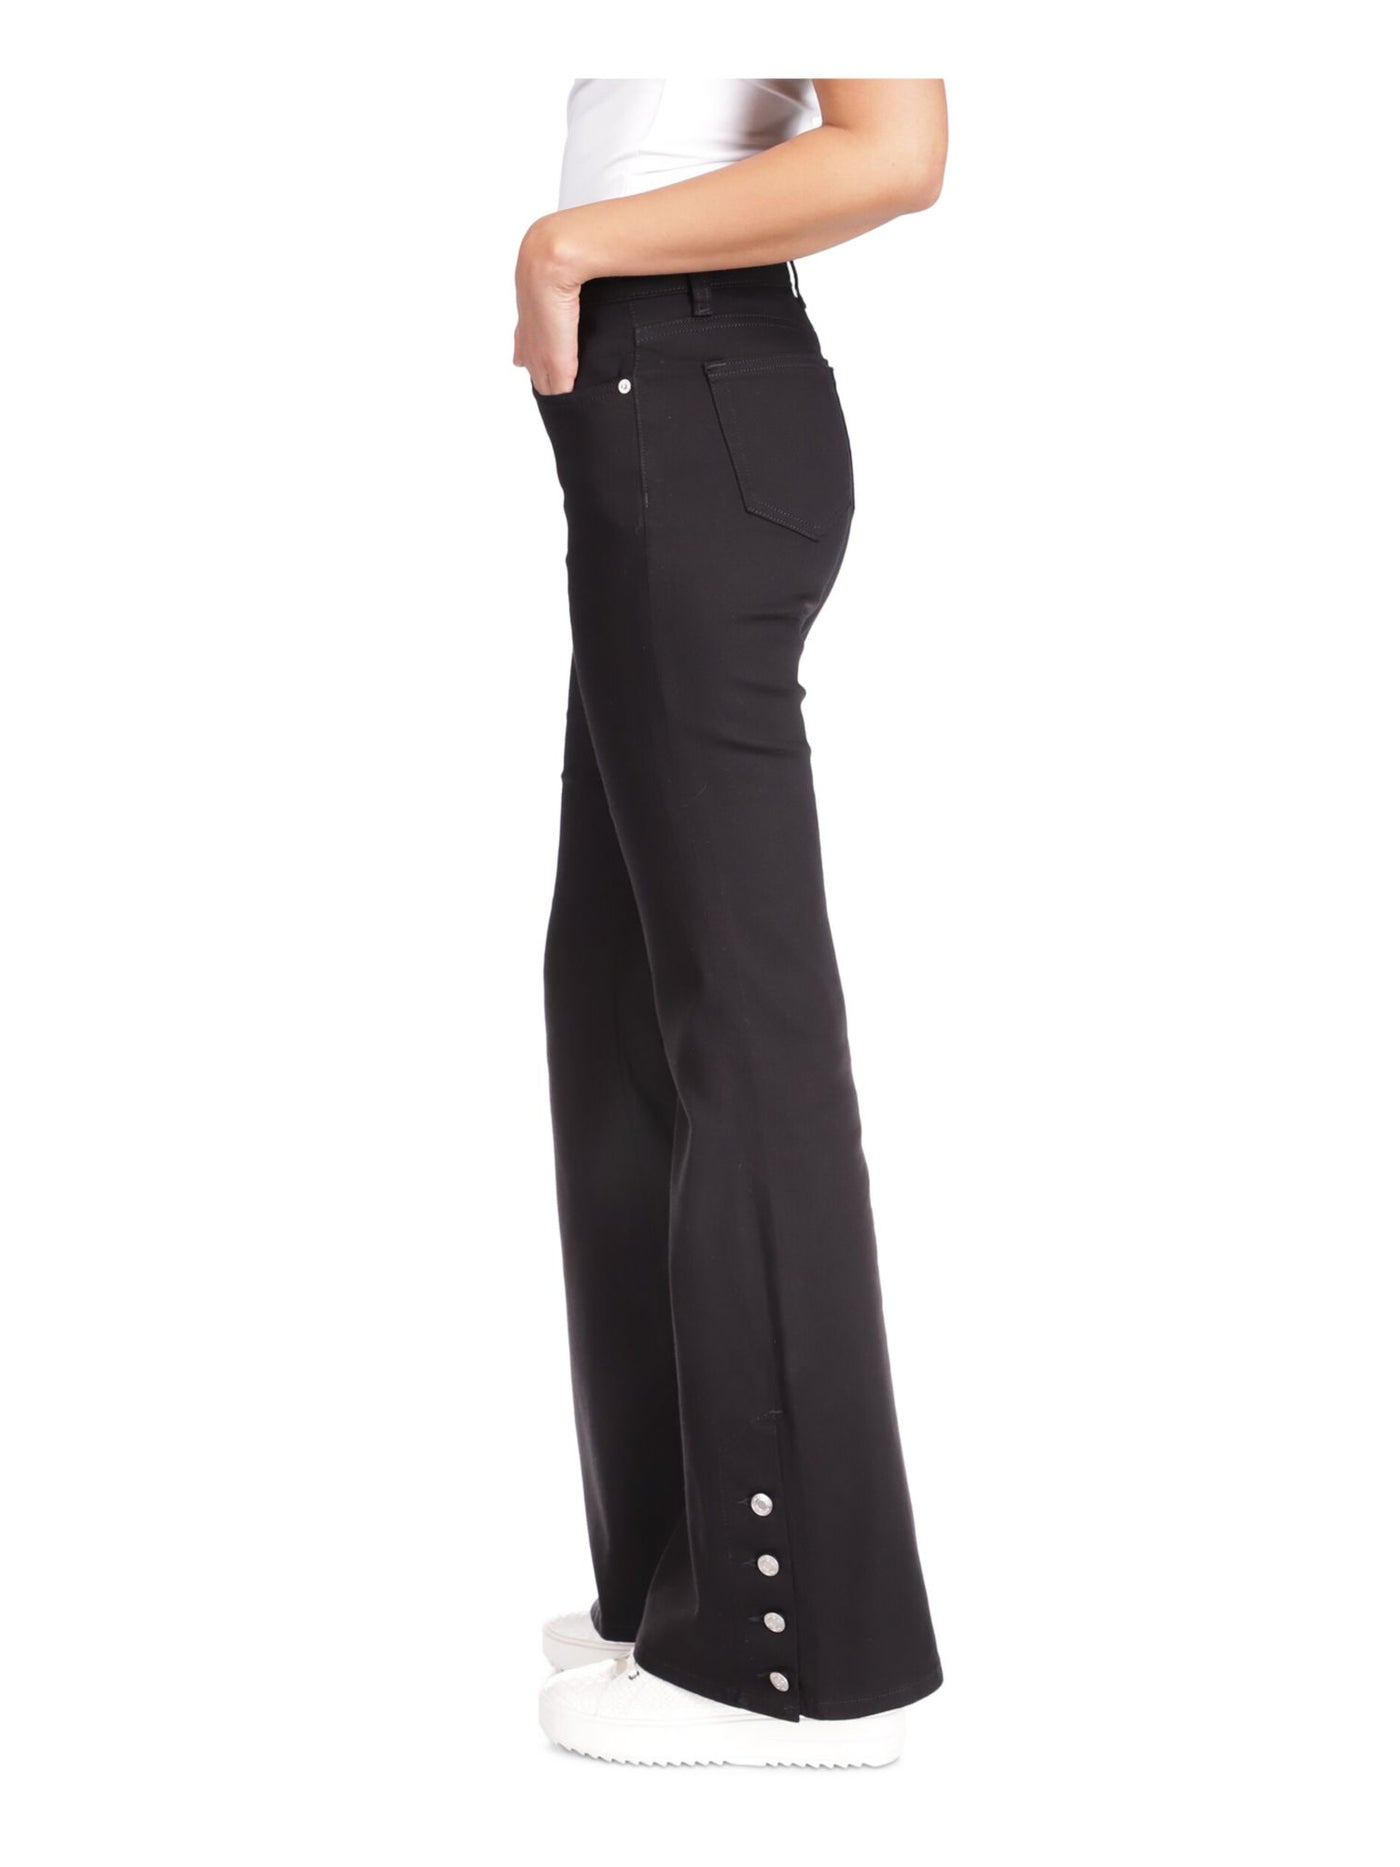 MICHAEL KORS Womens Black Zippered Pocketed Button Detail Cuffs High Waist Jeans 8